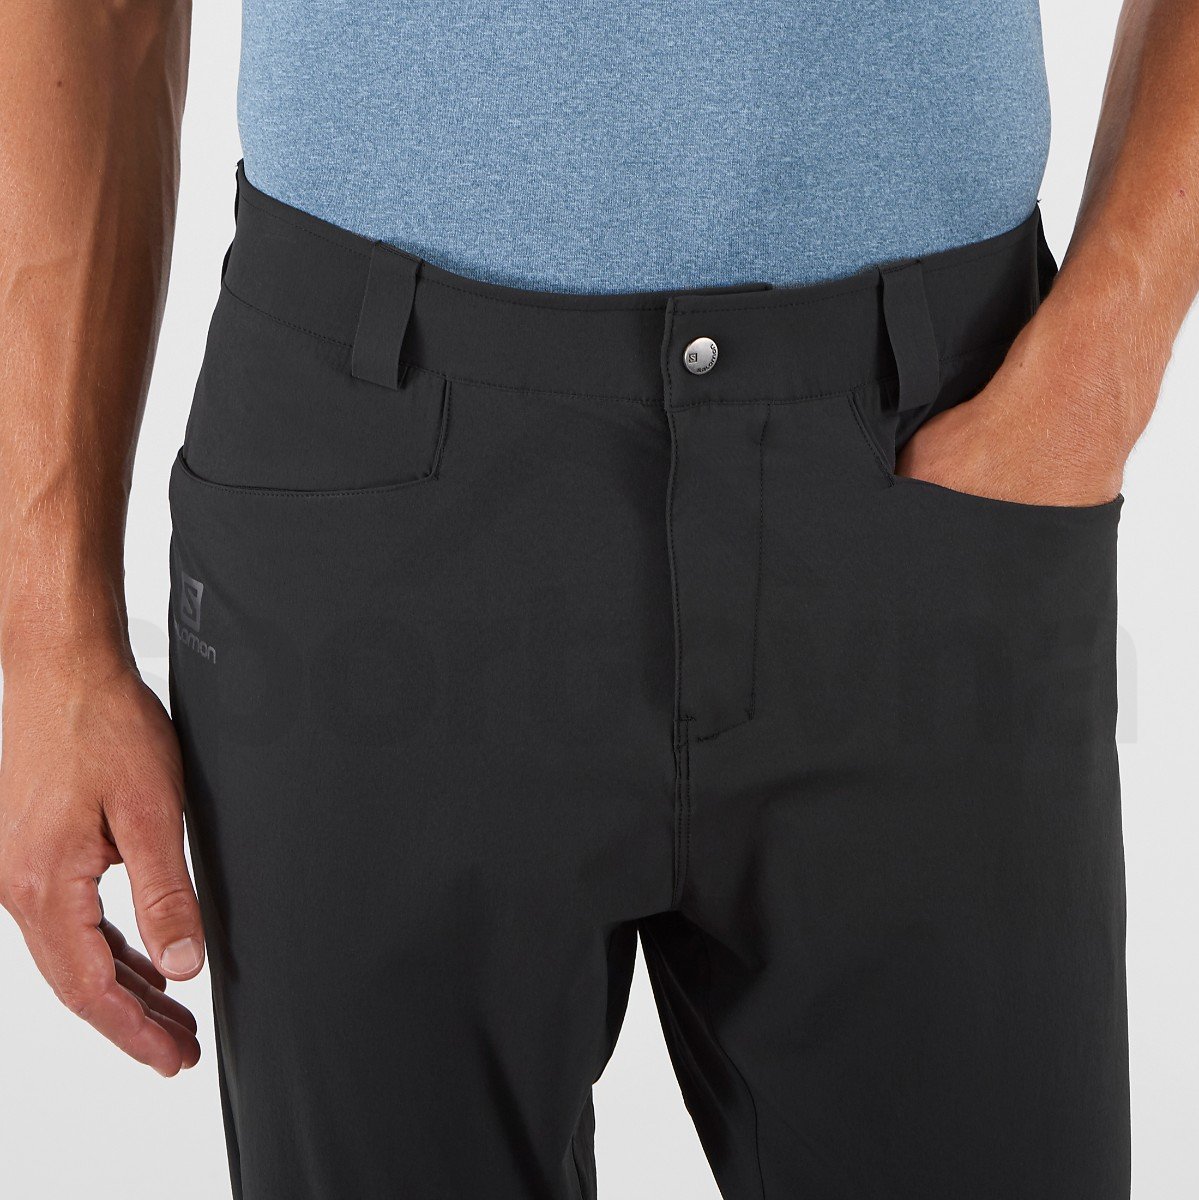 Kalhoty Salomon WAYFARER TAPERED PANTS M - černá (standardní délka)